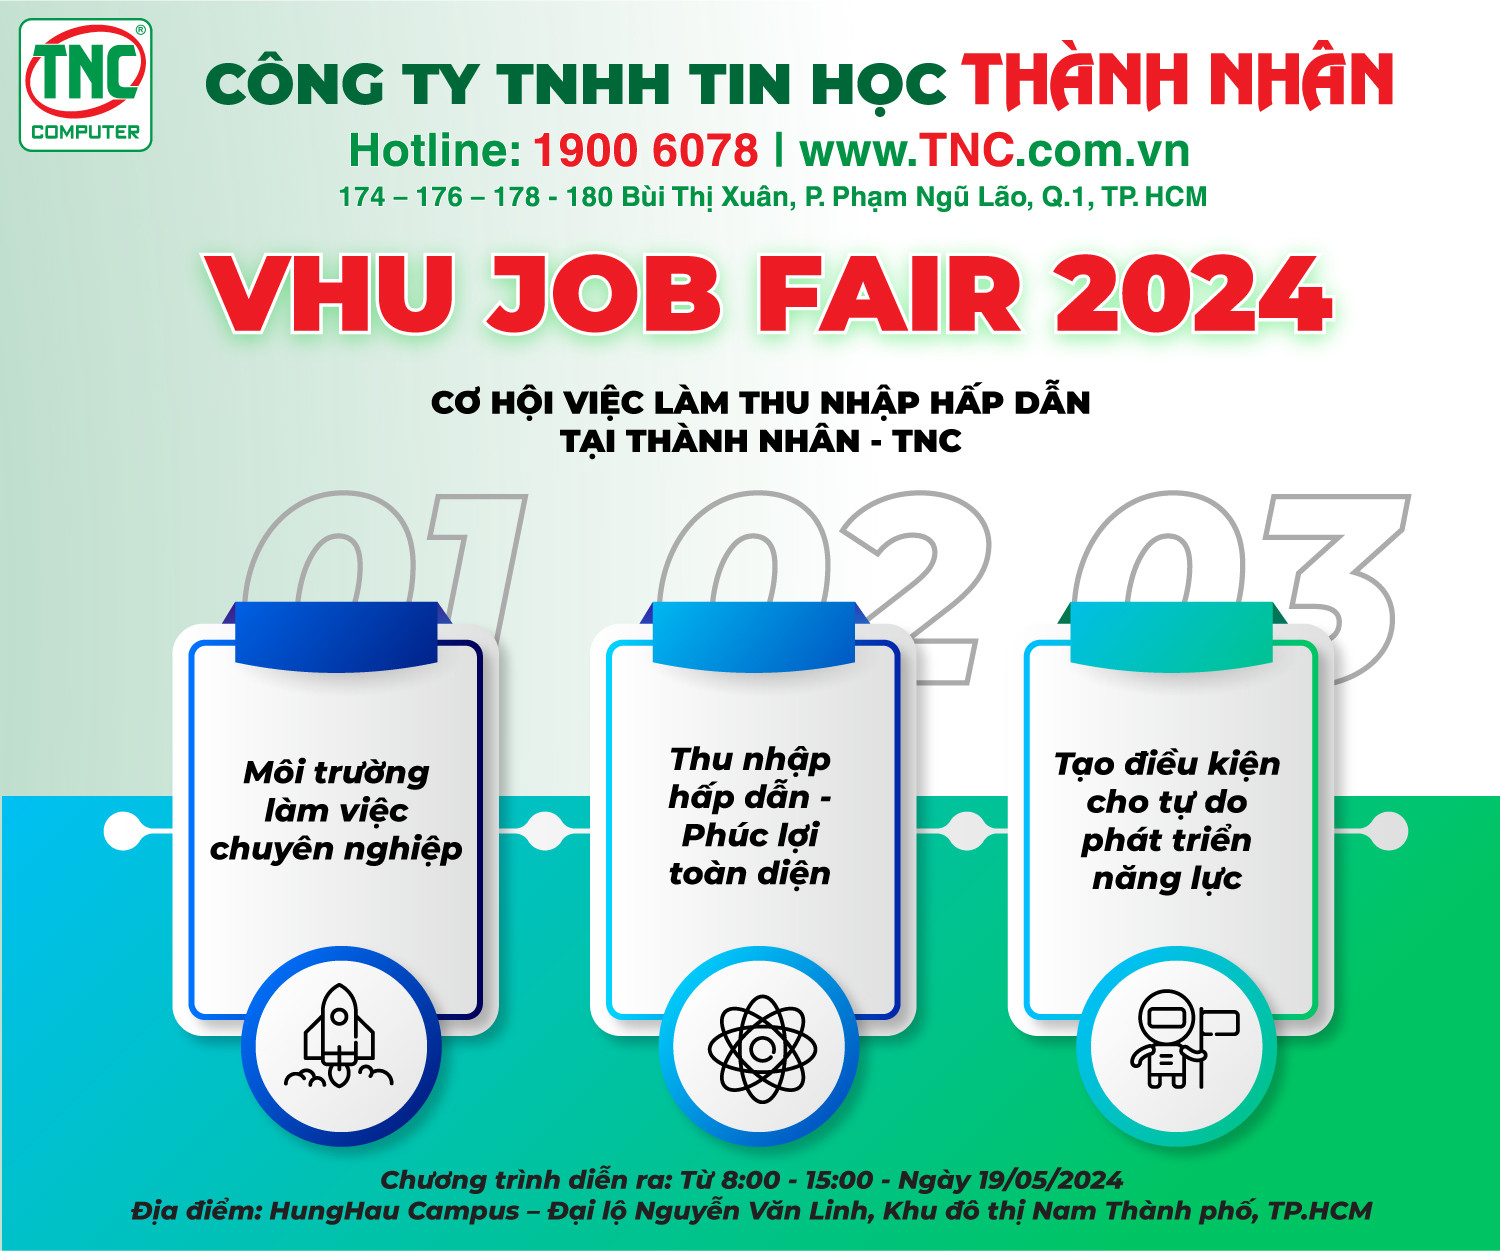 Thành Nhân - TNC tham dự ngày hội việc làm của VHU Job Fair 2024